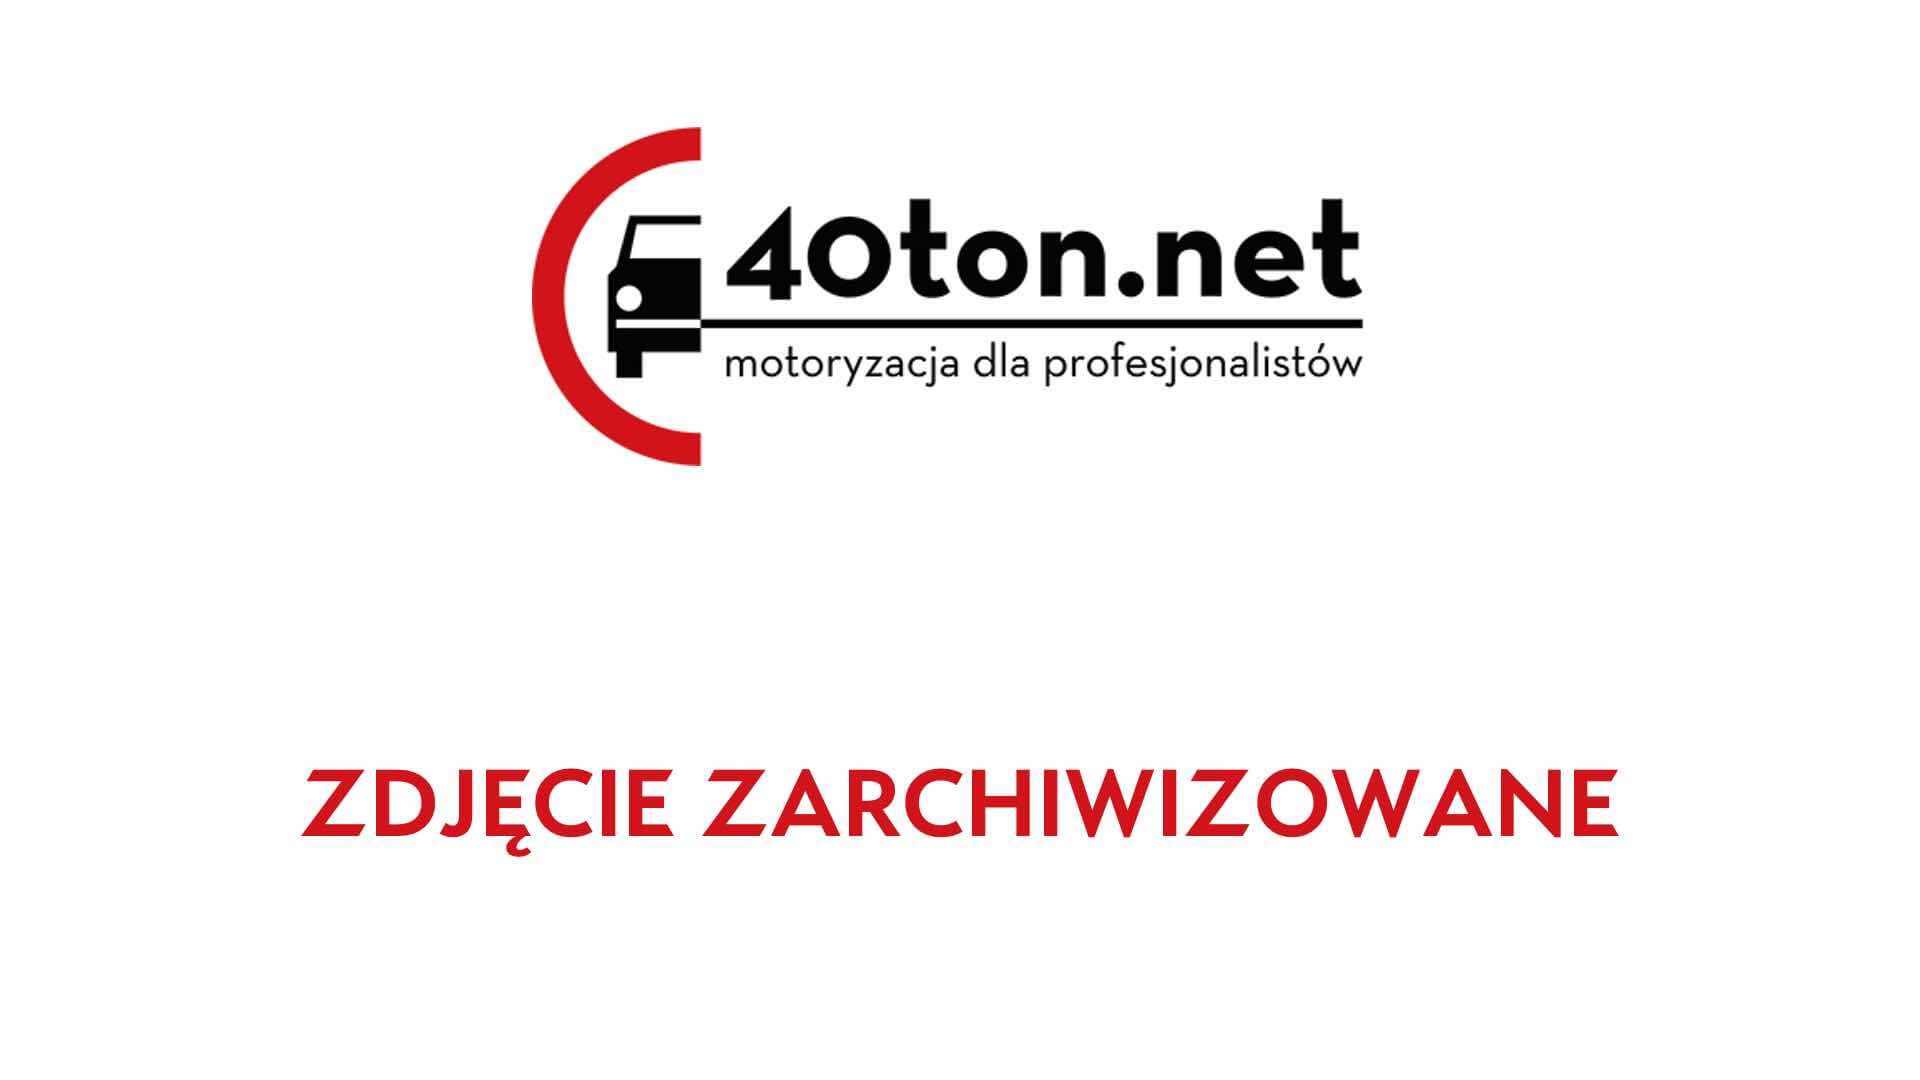 truckspotters_40ton_polskie_ciezarowki_32-1